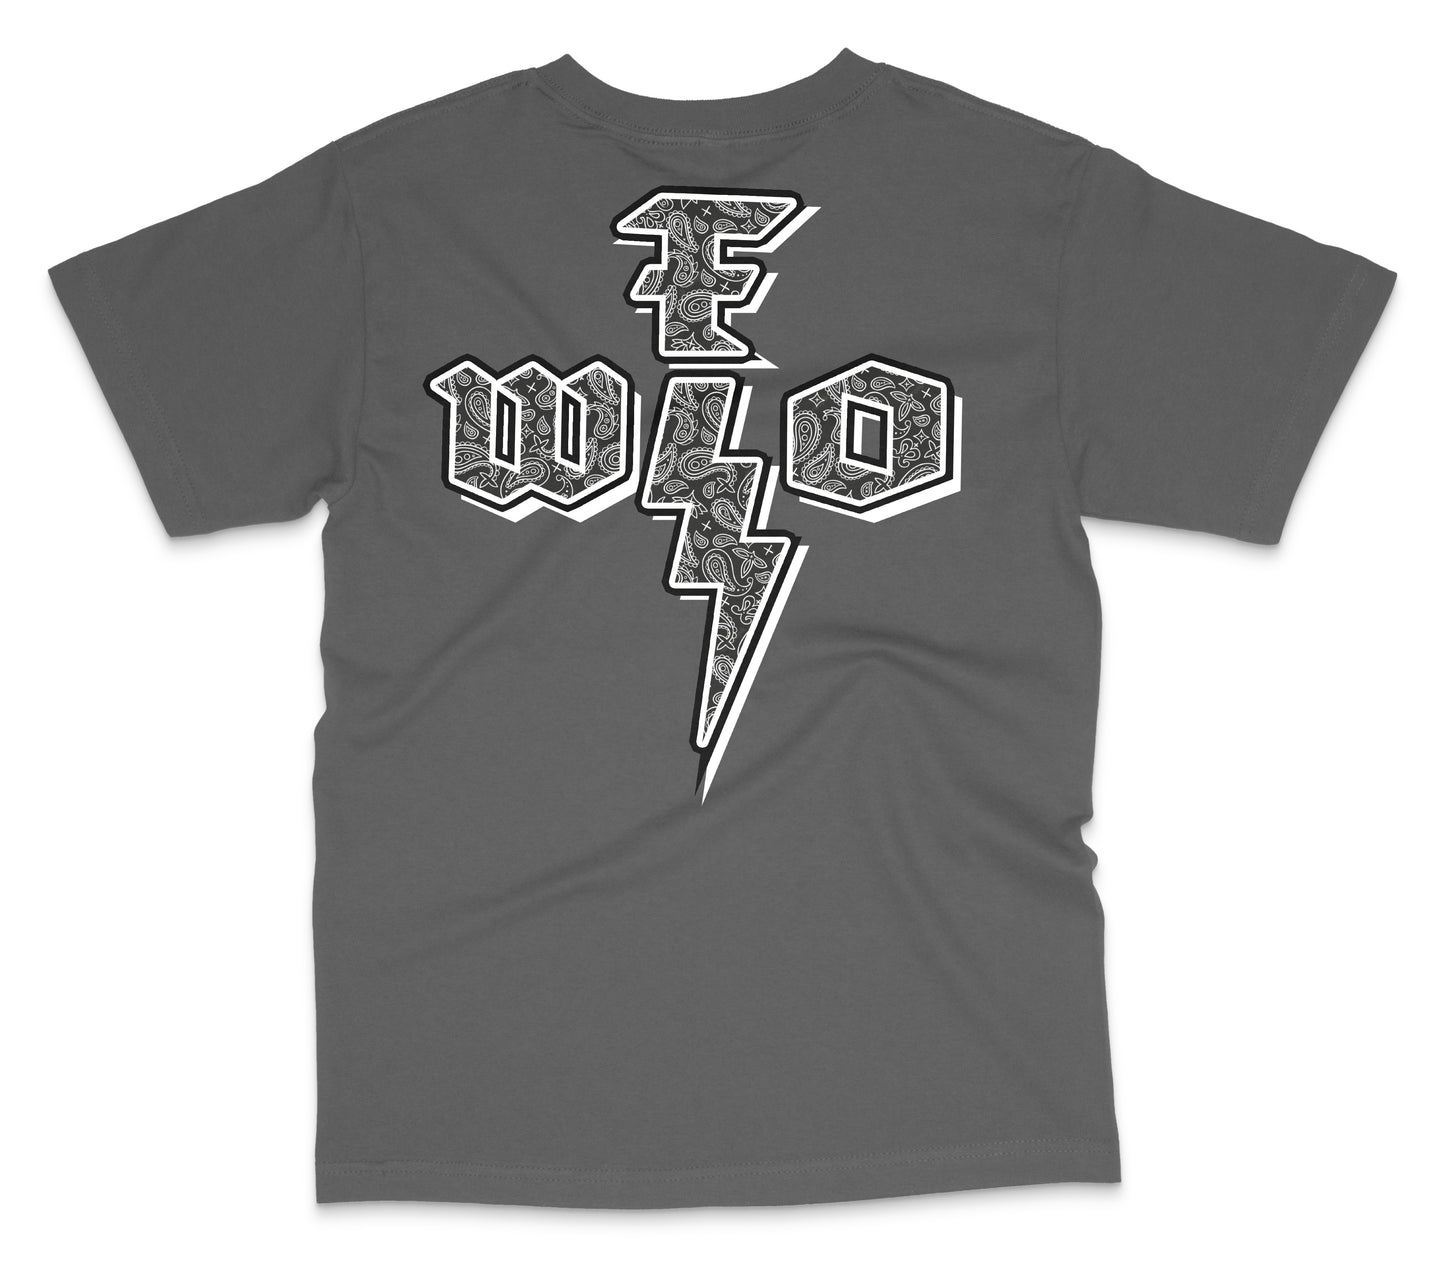 WFO 4 LIFE ™ - "Paisley G" T-Shirt - Grey